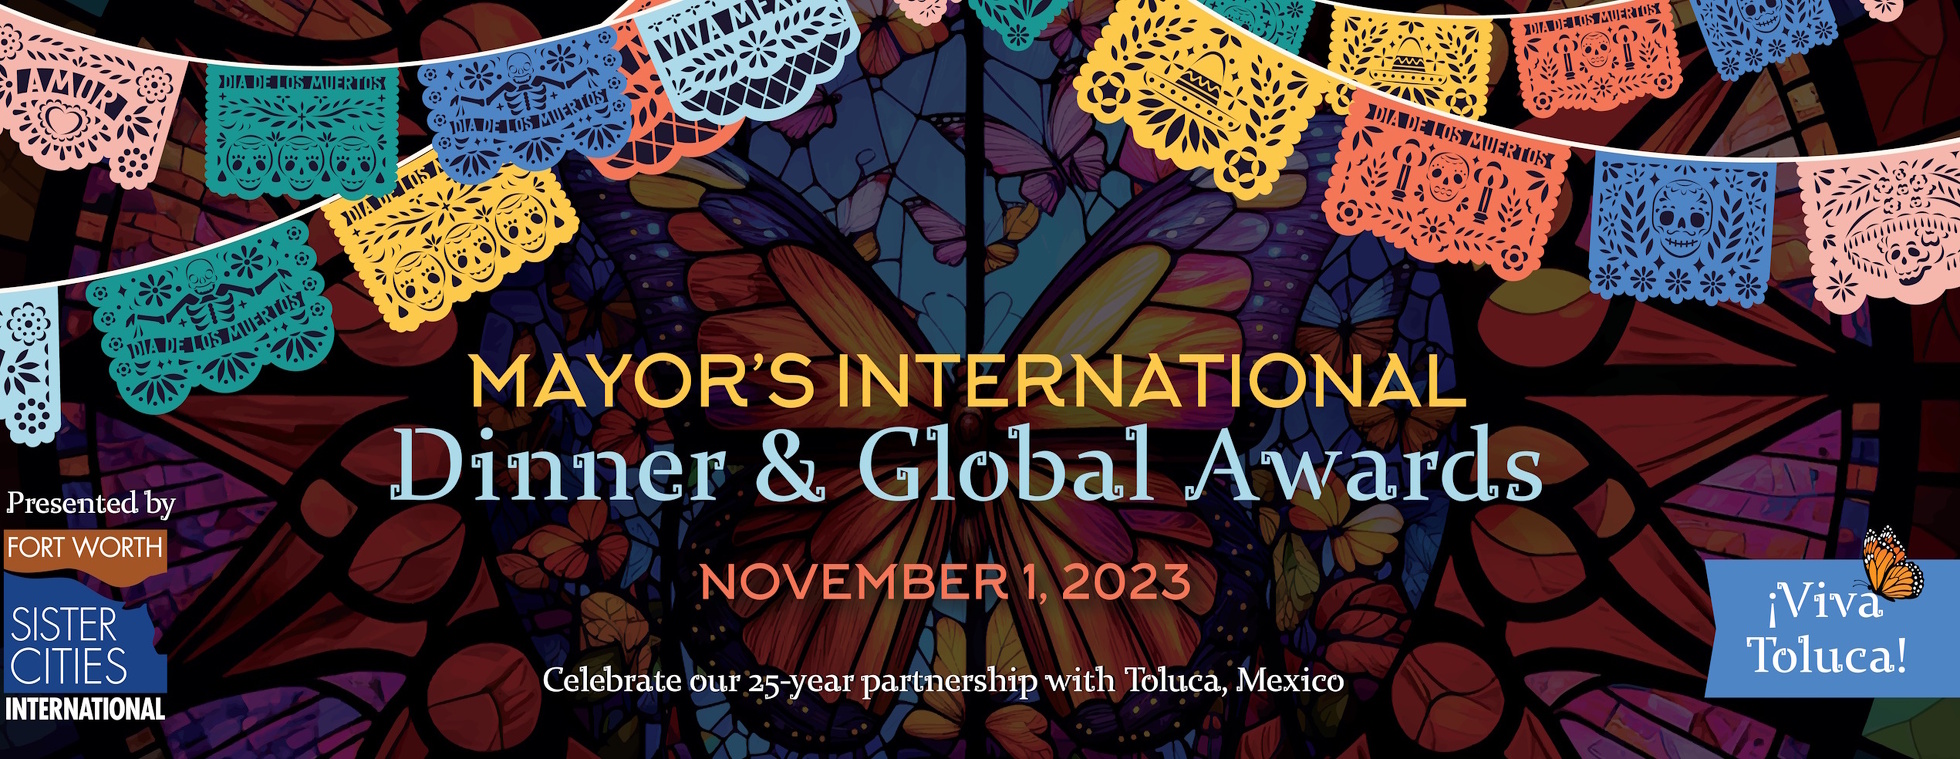 Mayor's International Dinner & Global Awards